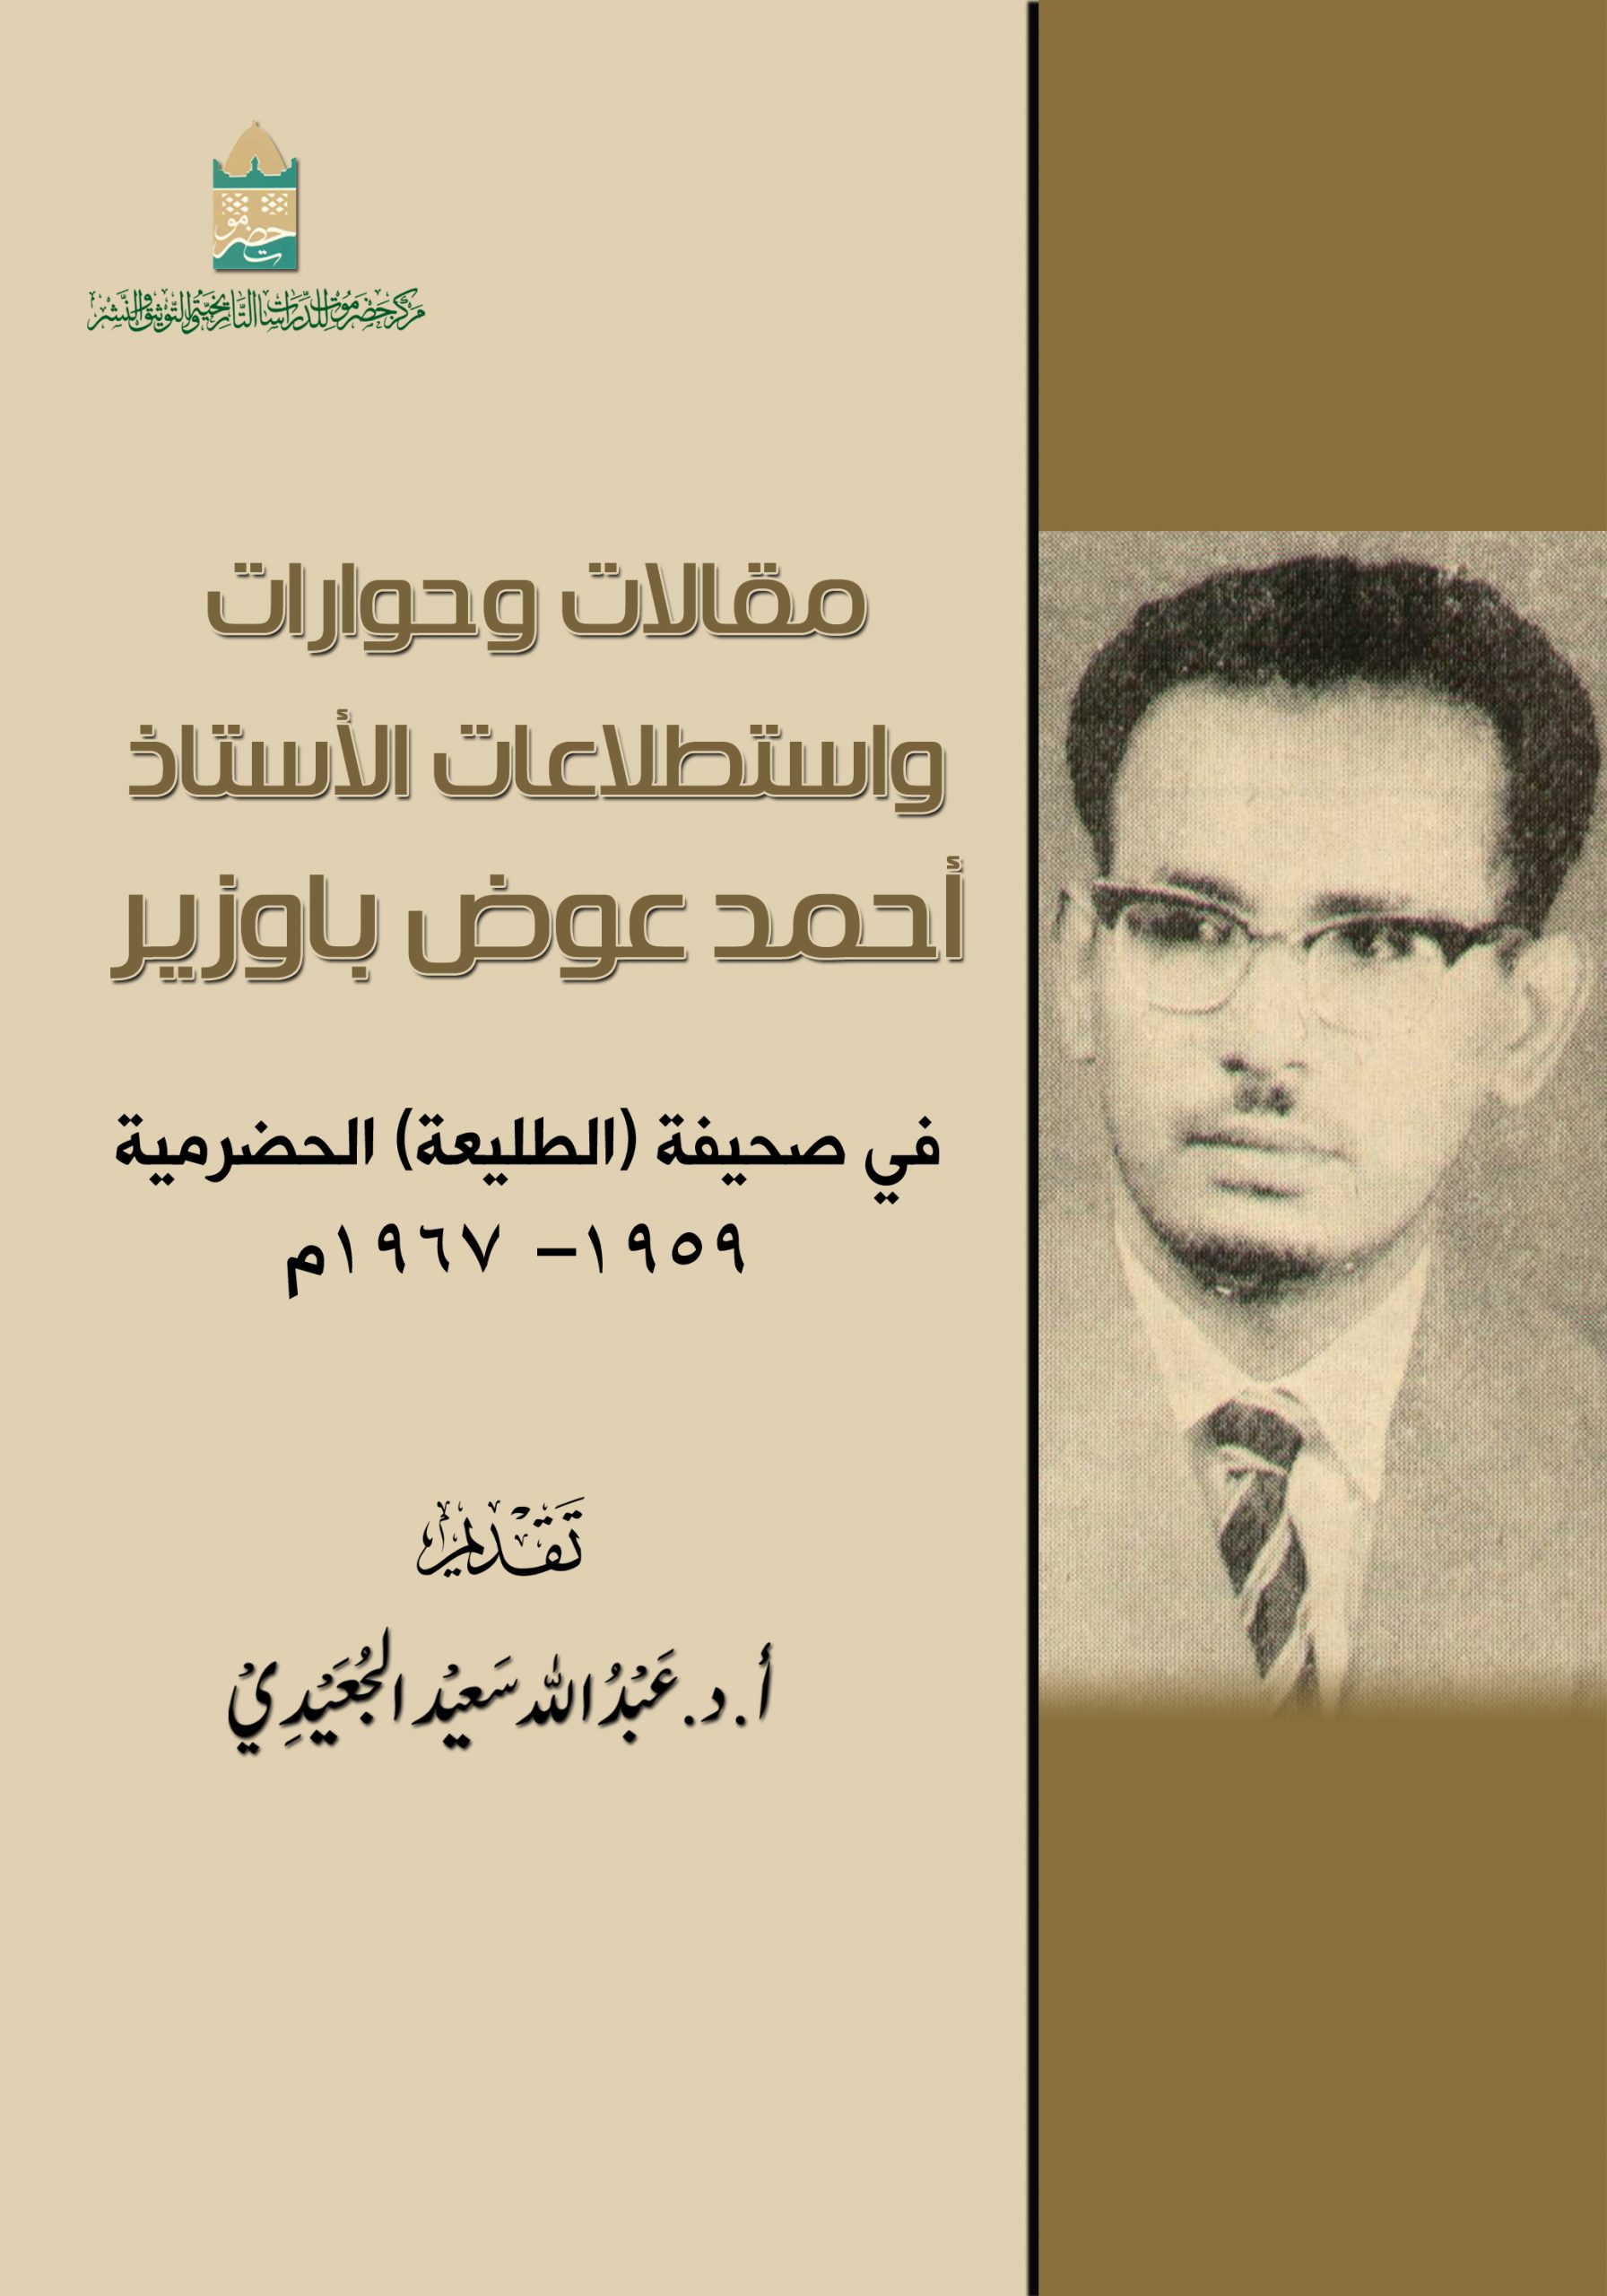 مقالات وحوارات واستطلاعات الأستاذ أحمد عوض باوزير في صحيفة (الطليعة) الحضرمية 1959 - 1967م